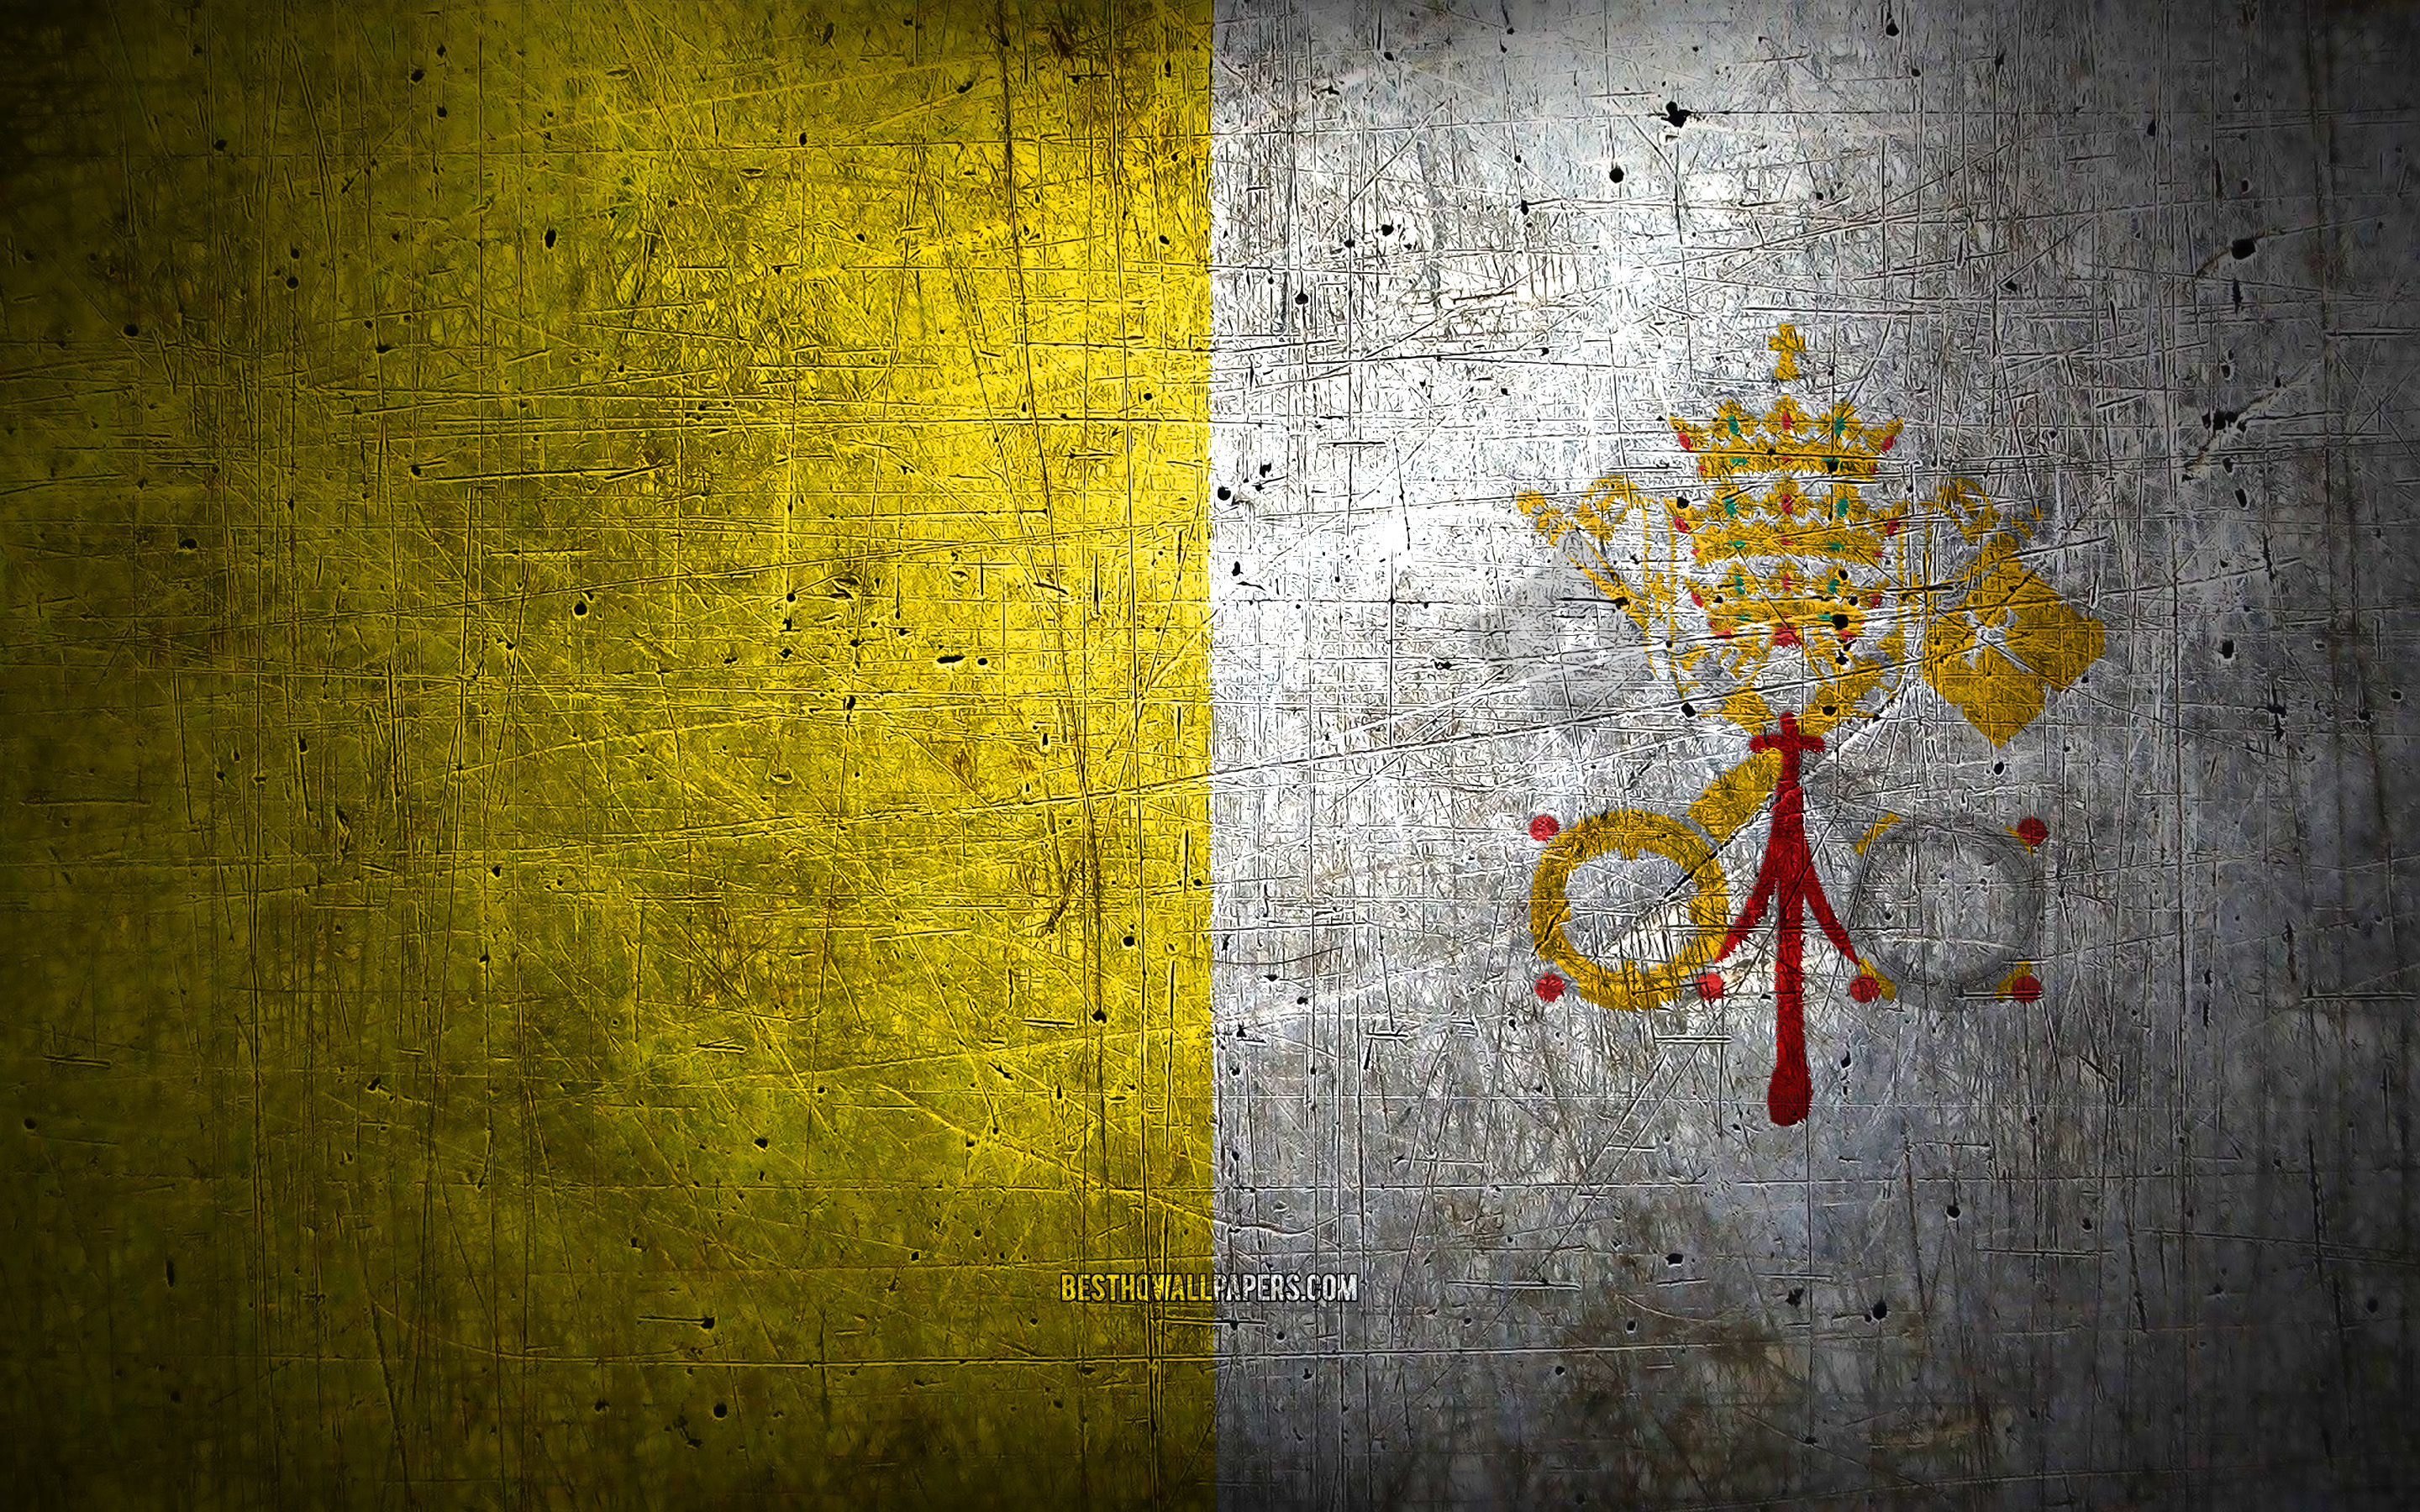 ダウンロード画像 バチカンの金属旗 グランジアート ヨーロッパ諸国 バチカン市国の日 国家のシンボル バチカン市国 金属旗 バチカン市国の旗 ヨーロッパ バチカンの国旗 画面の解像度 x1800 壁紙デスクトップ上